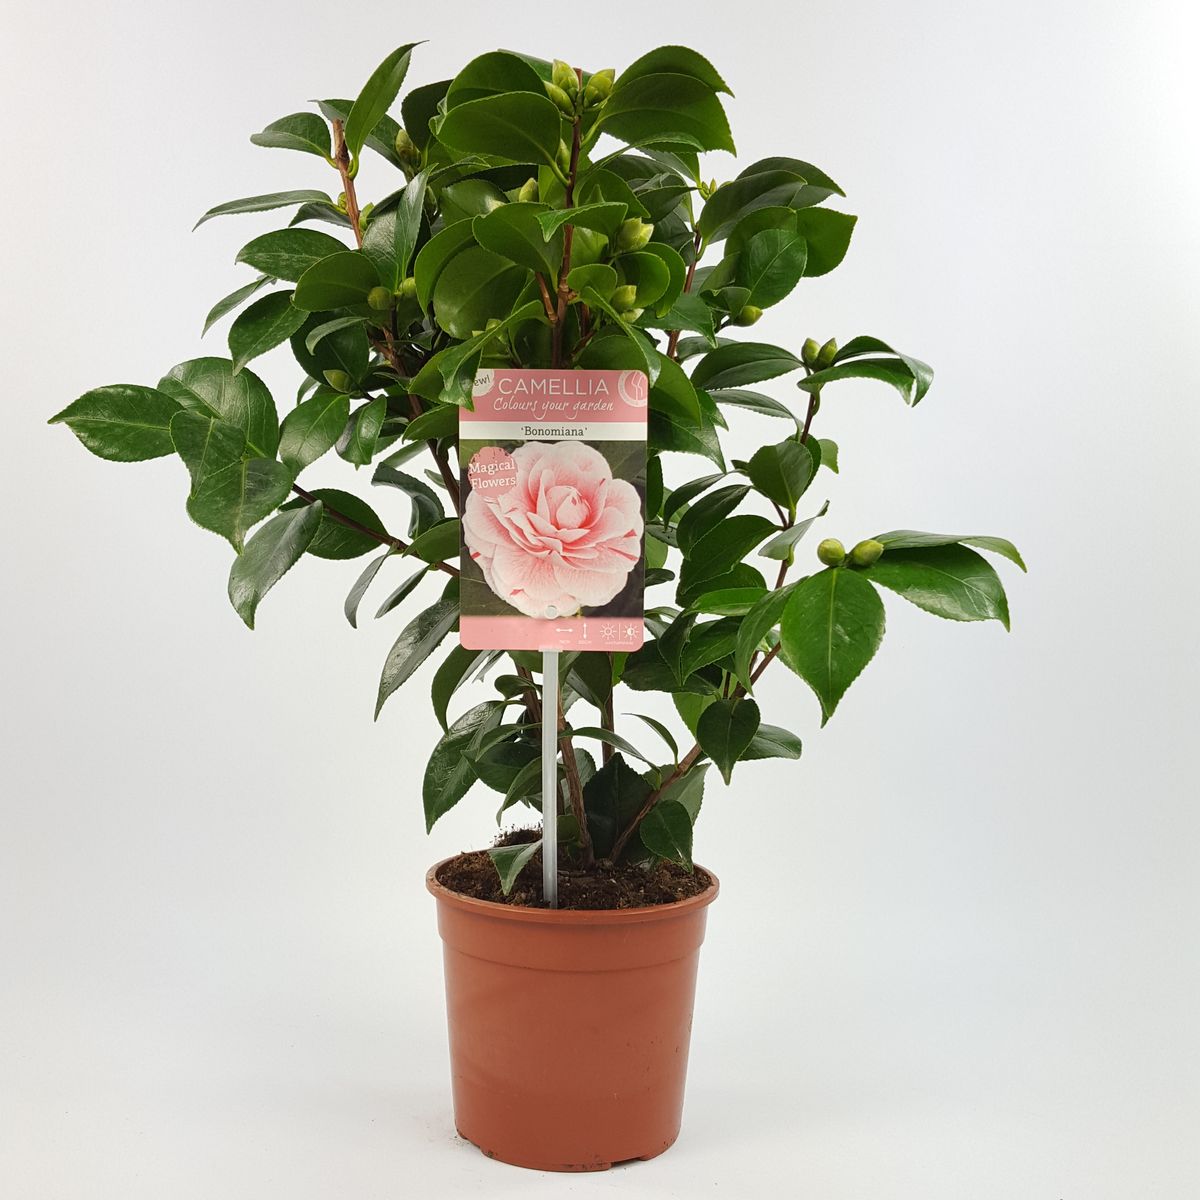 Camellia japonica 'Bonomiana' — Plant Wholesale FlorAccess